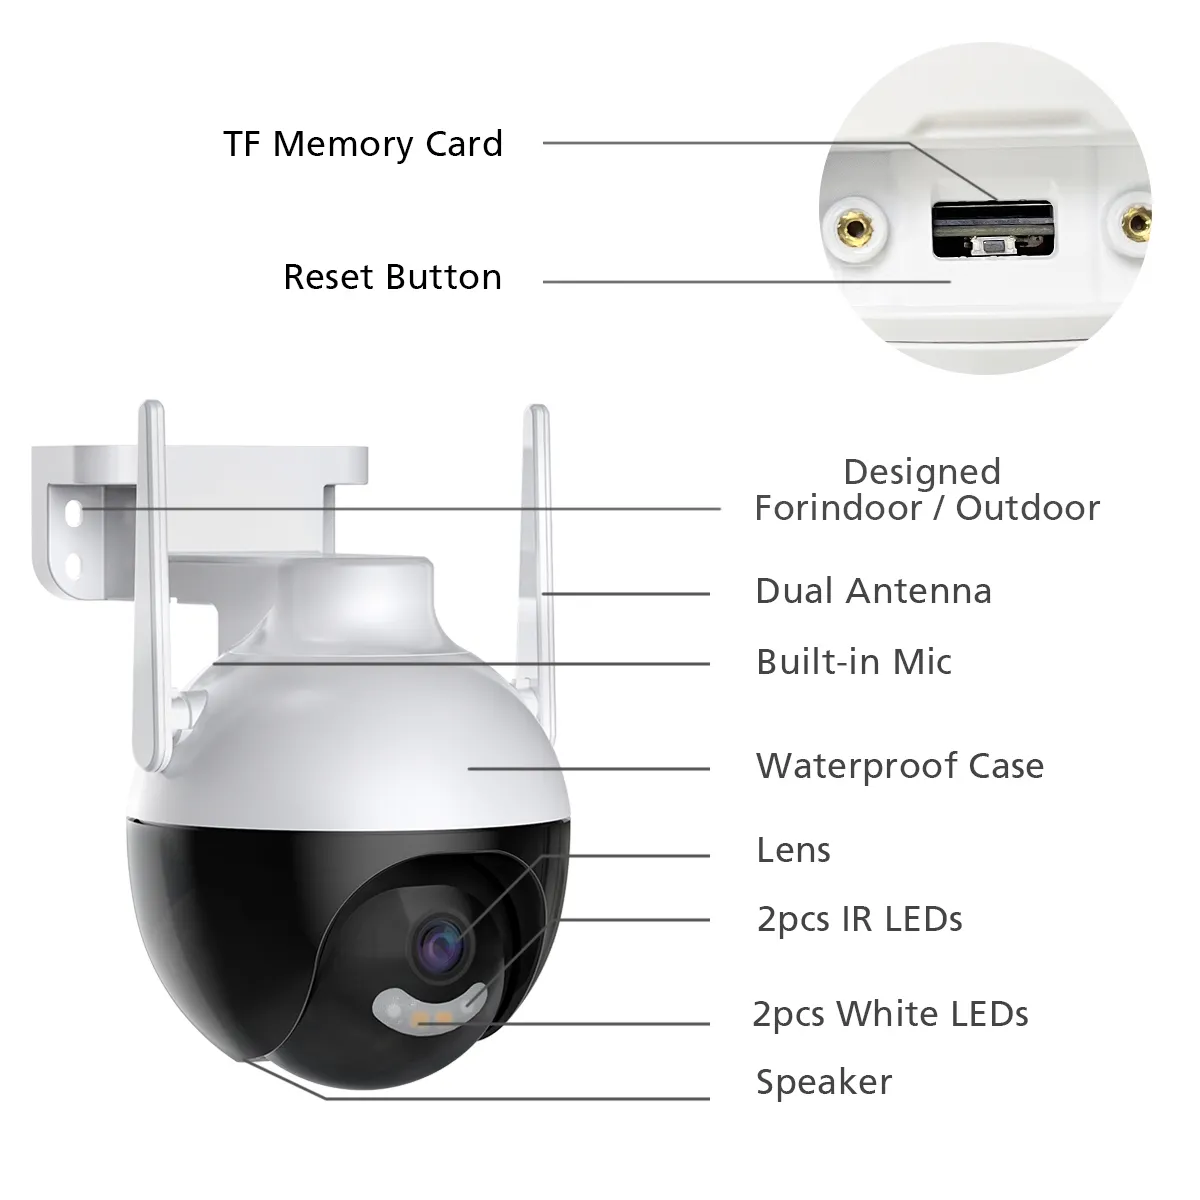 2,4G/5G Dual WLAN wasserdichte Smart Camera Originalhersteller Produkt 2MP kabellose WLAN-Kamera für Baby zuhause im Freien